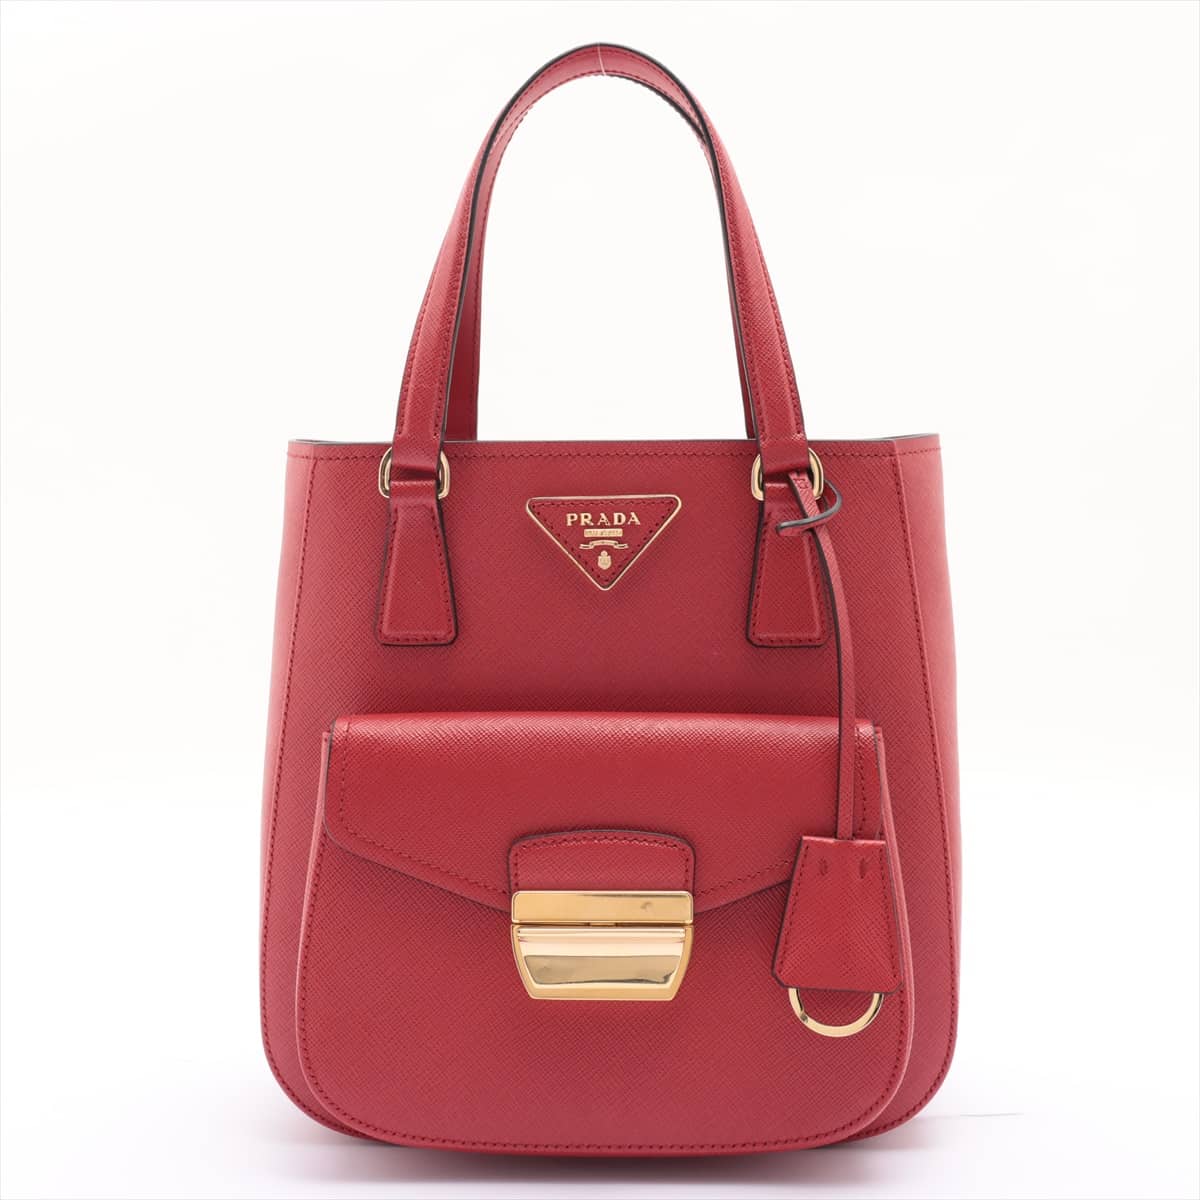 Prada Saffiano Lux 2way handbag Red 1BA254 open papers